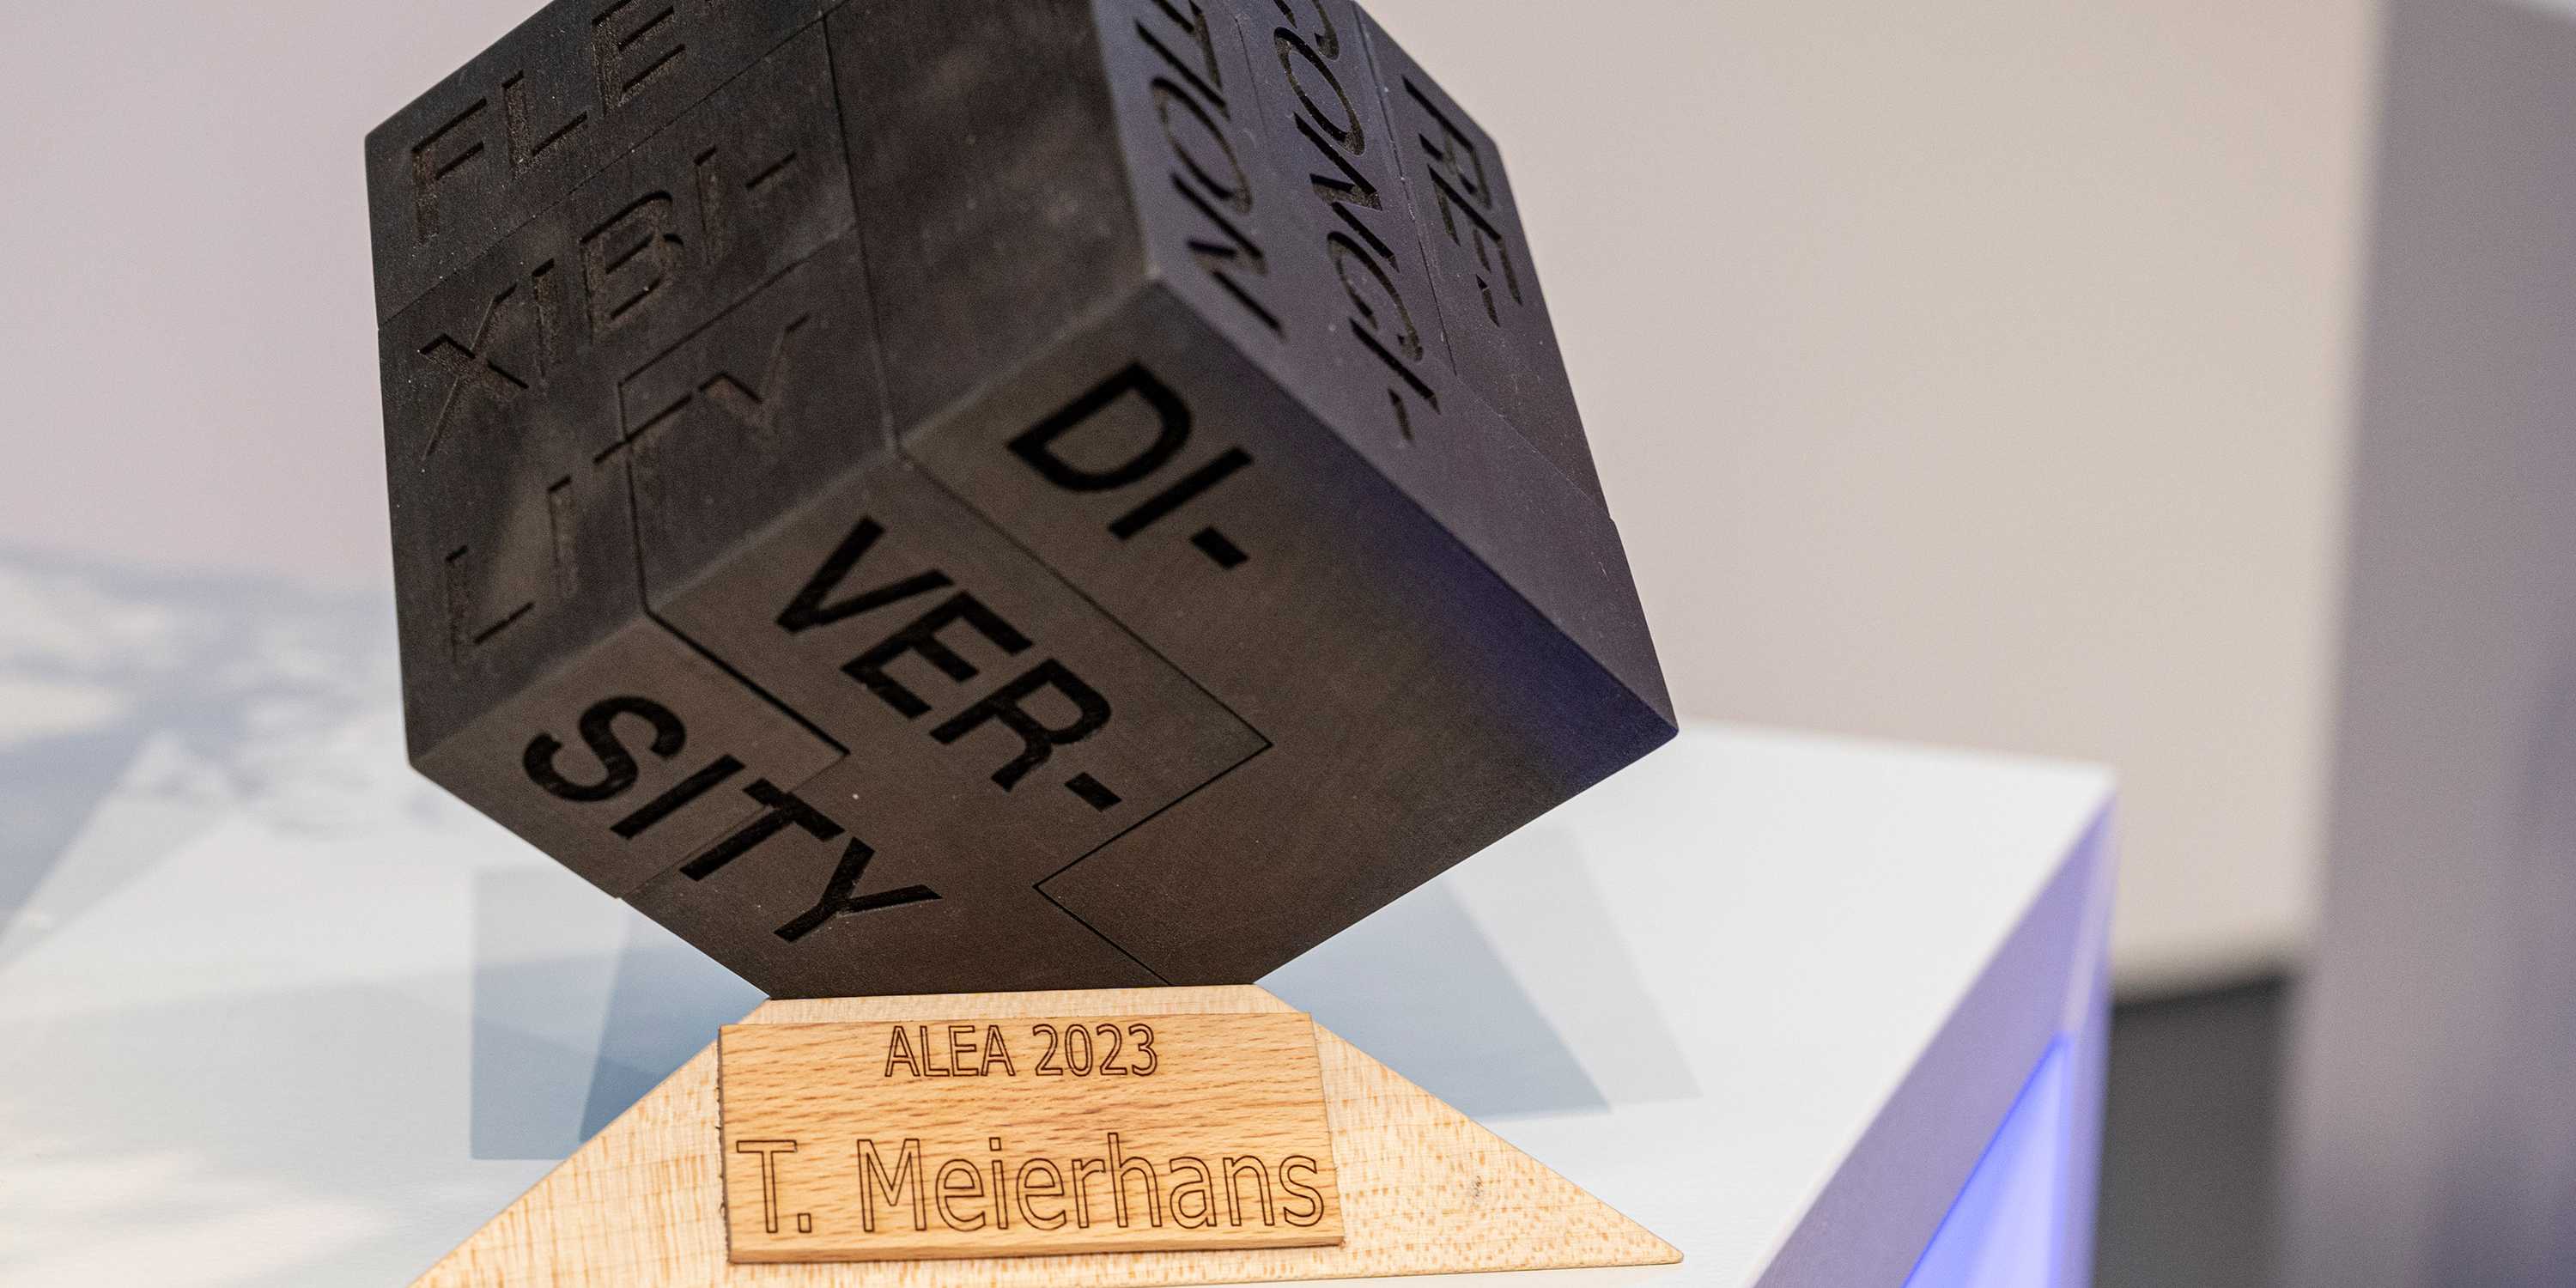 Der Alea Award von T. Meierhans.